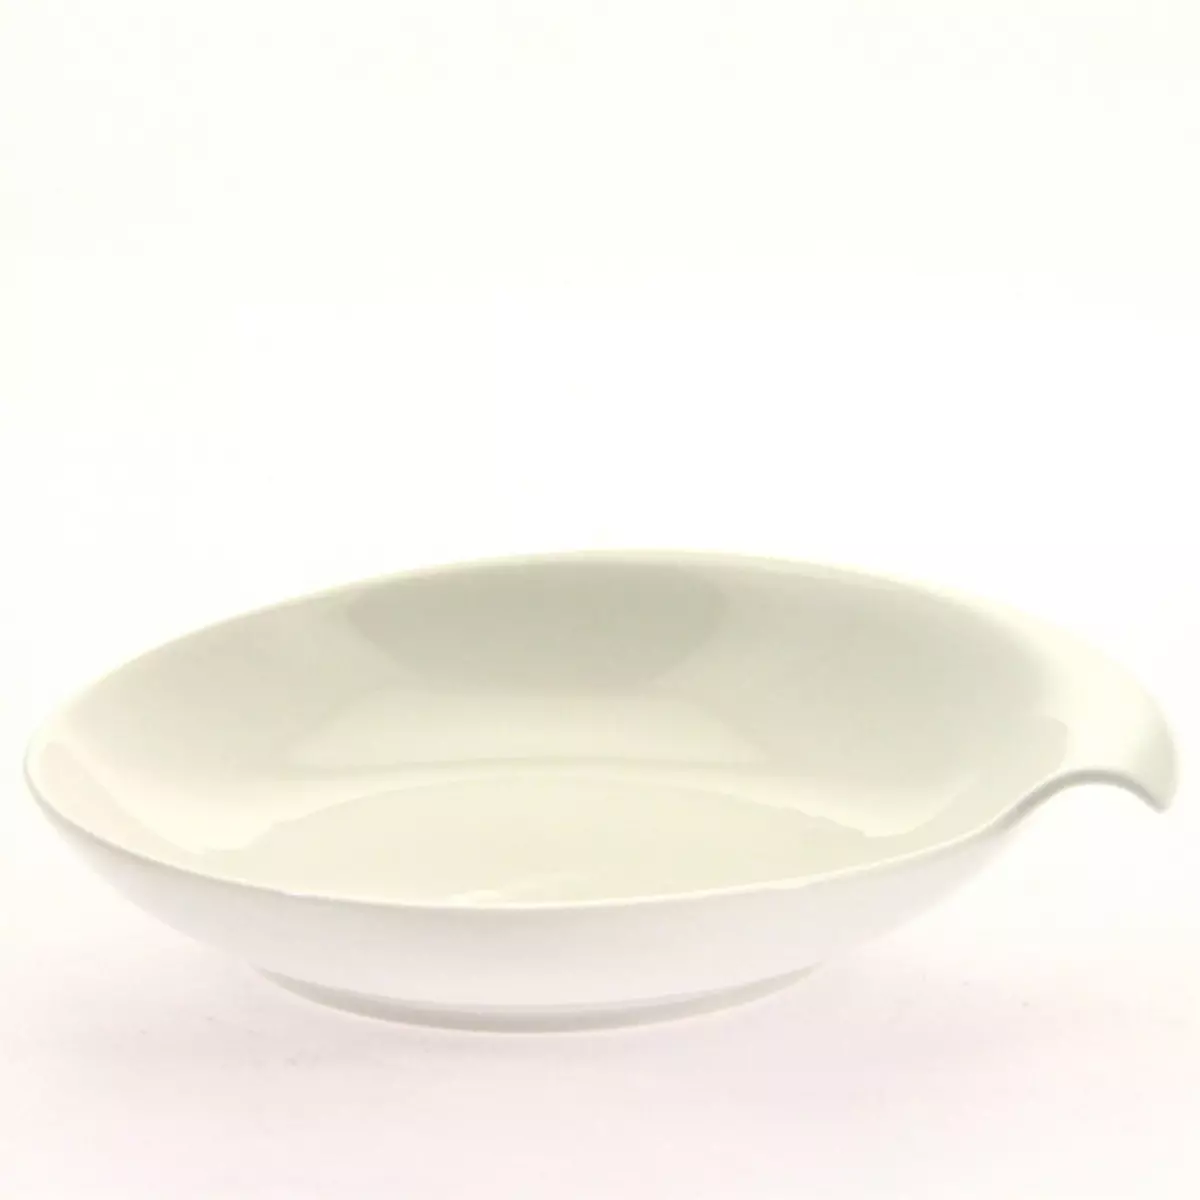 B&W Cuisine Coupelle en porcelaine décorée - Coquillage - Diam. 19 cm